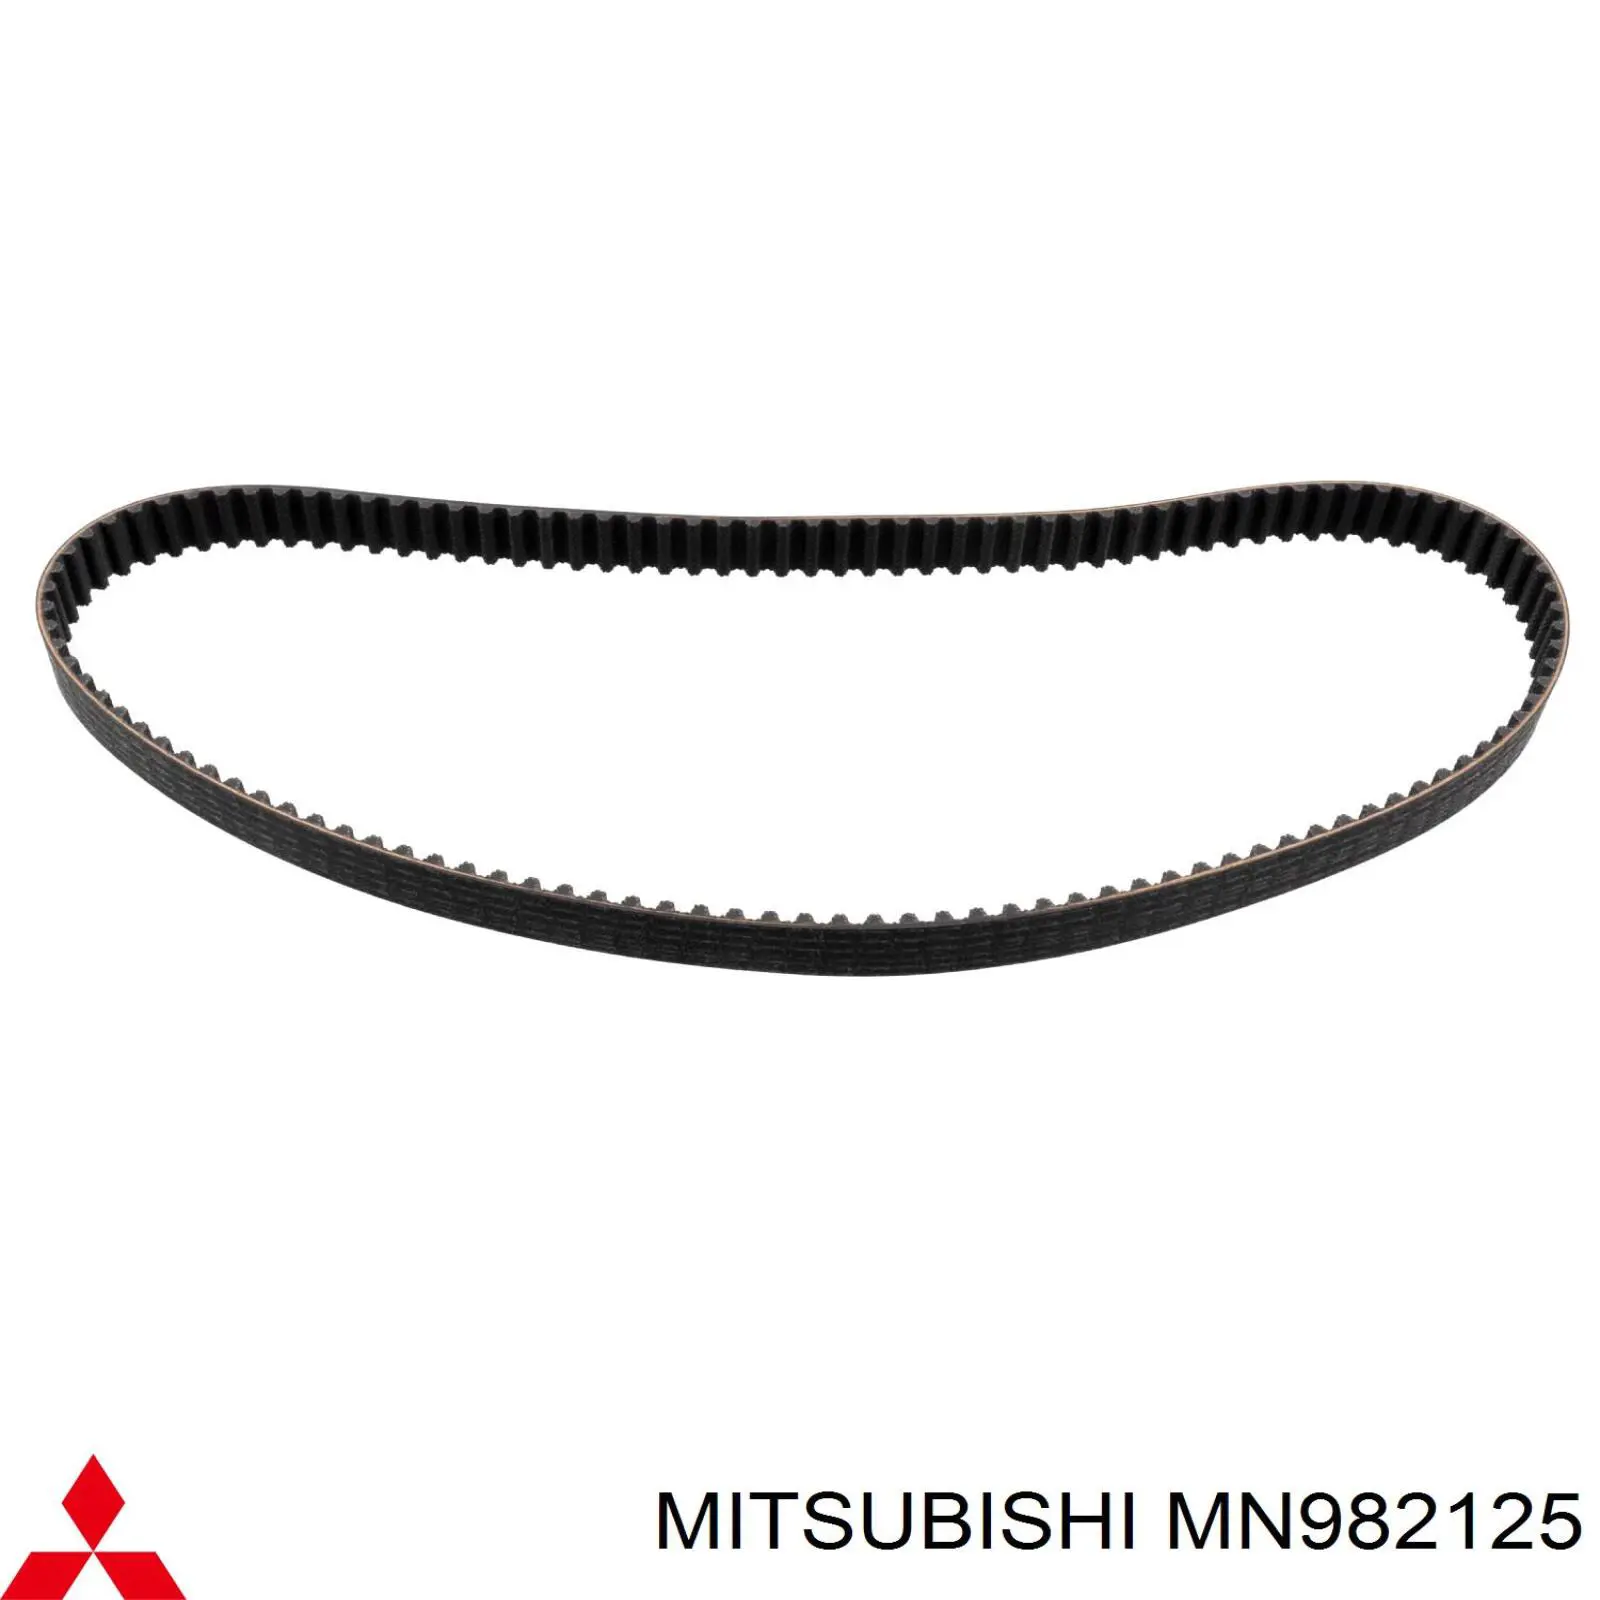 MN982125 Mitsubishi correa distribucion